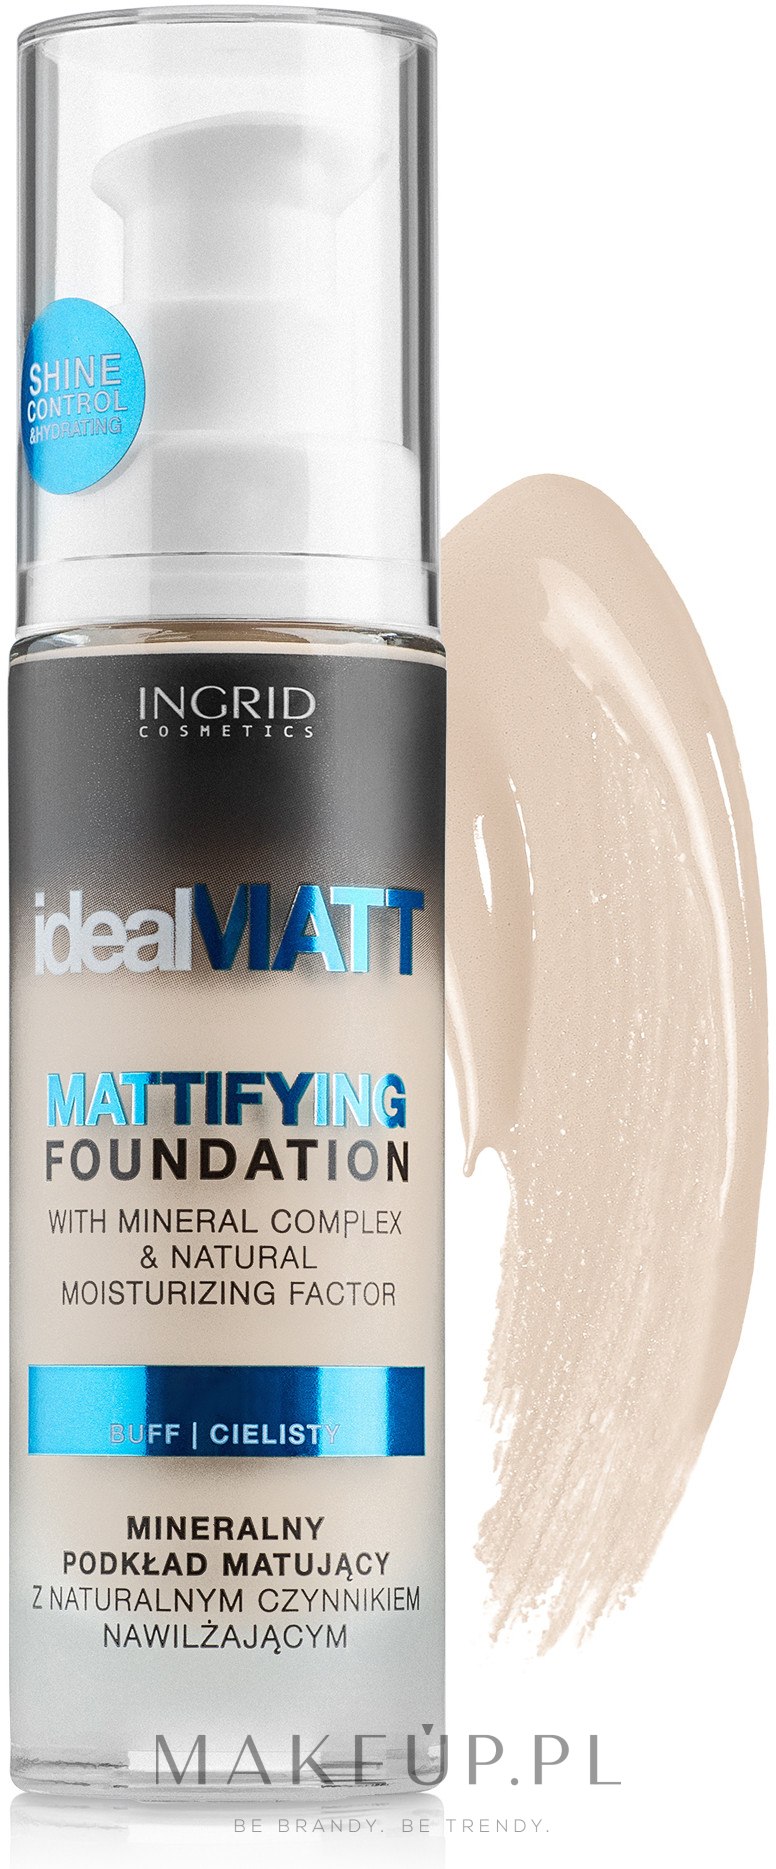 Mineralny podkład matujący z naturalnym czynnikiem nawilżającym - Ingrid Cosmetics Ideal Matt Mattifying Foundation — Zdjęcie 300 - Ivory